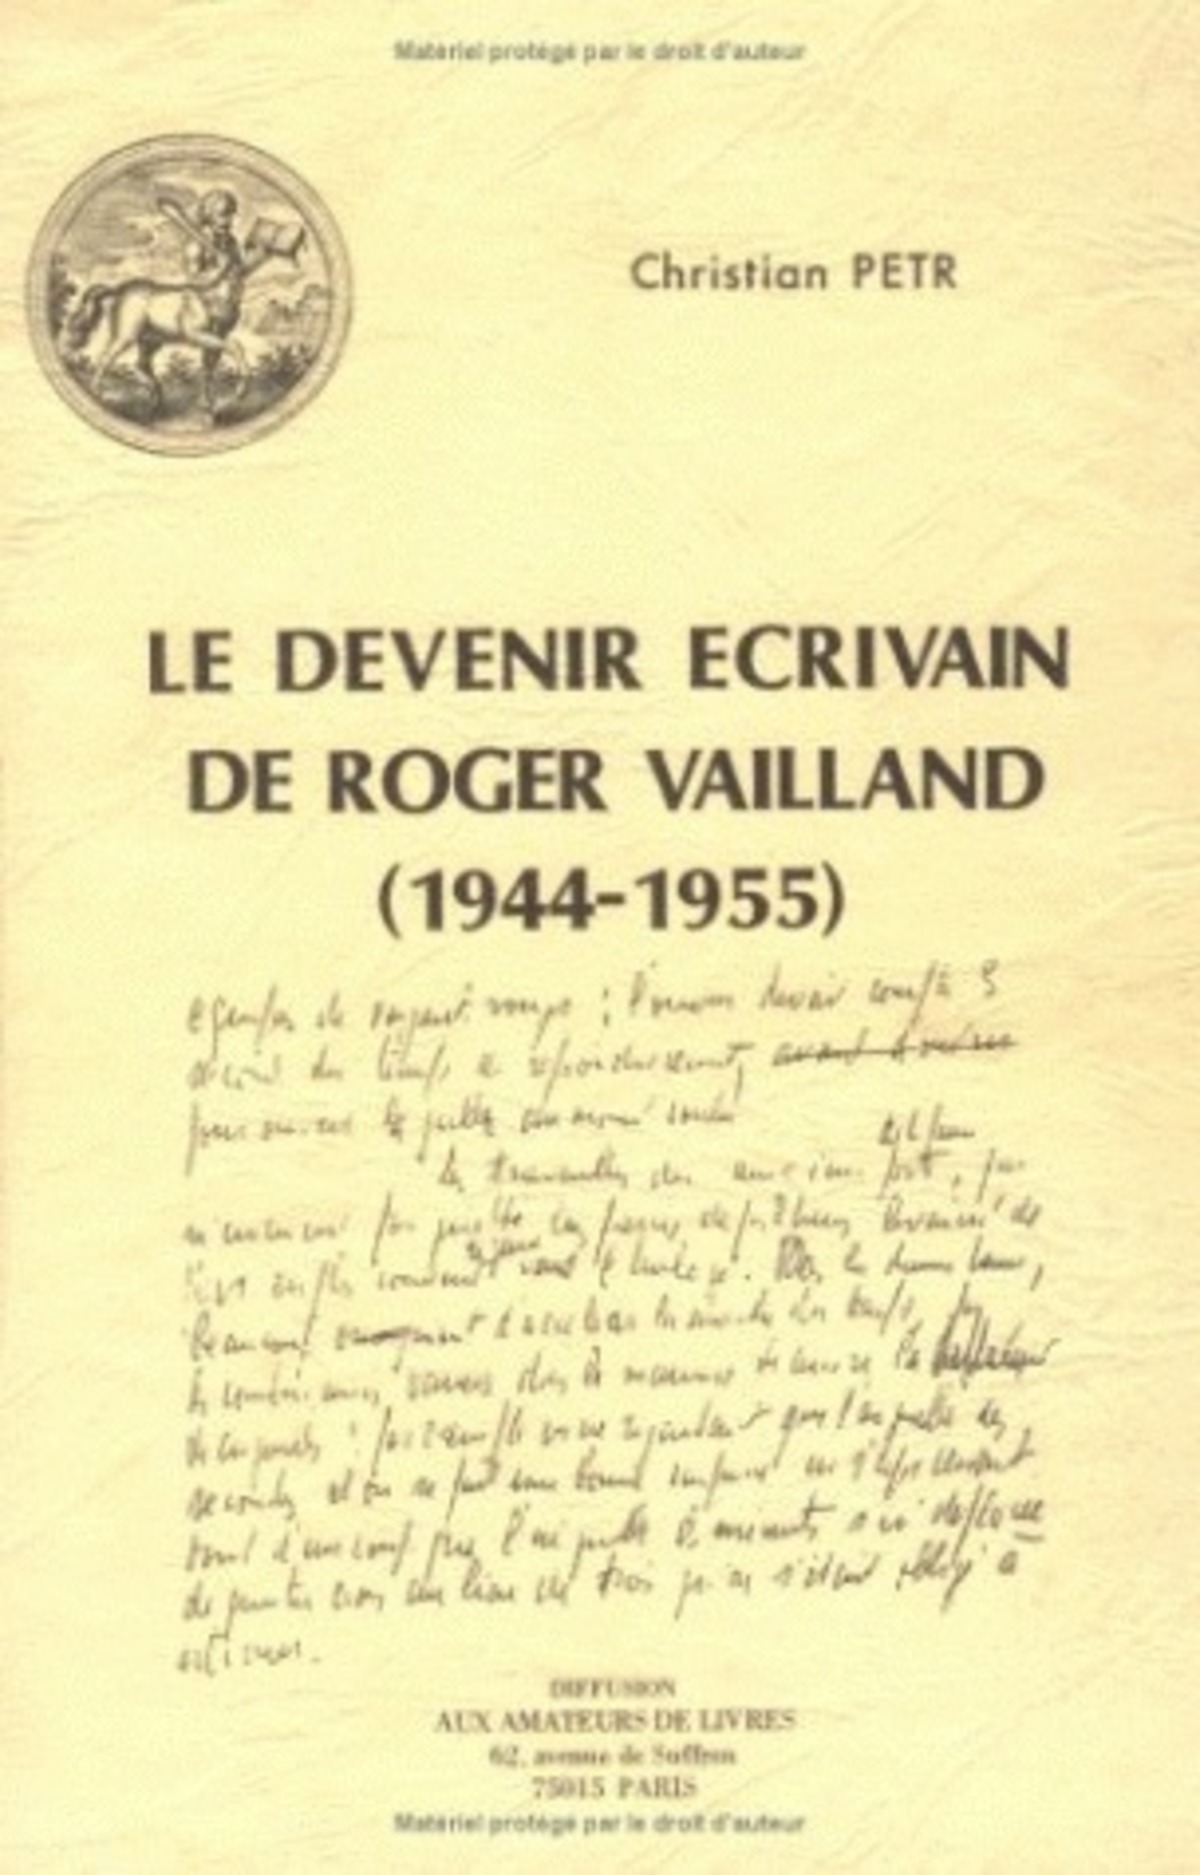 Le Devenir écrivain de Roger Vailland (1944-1955)